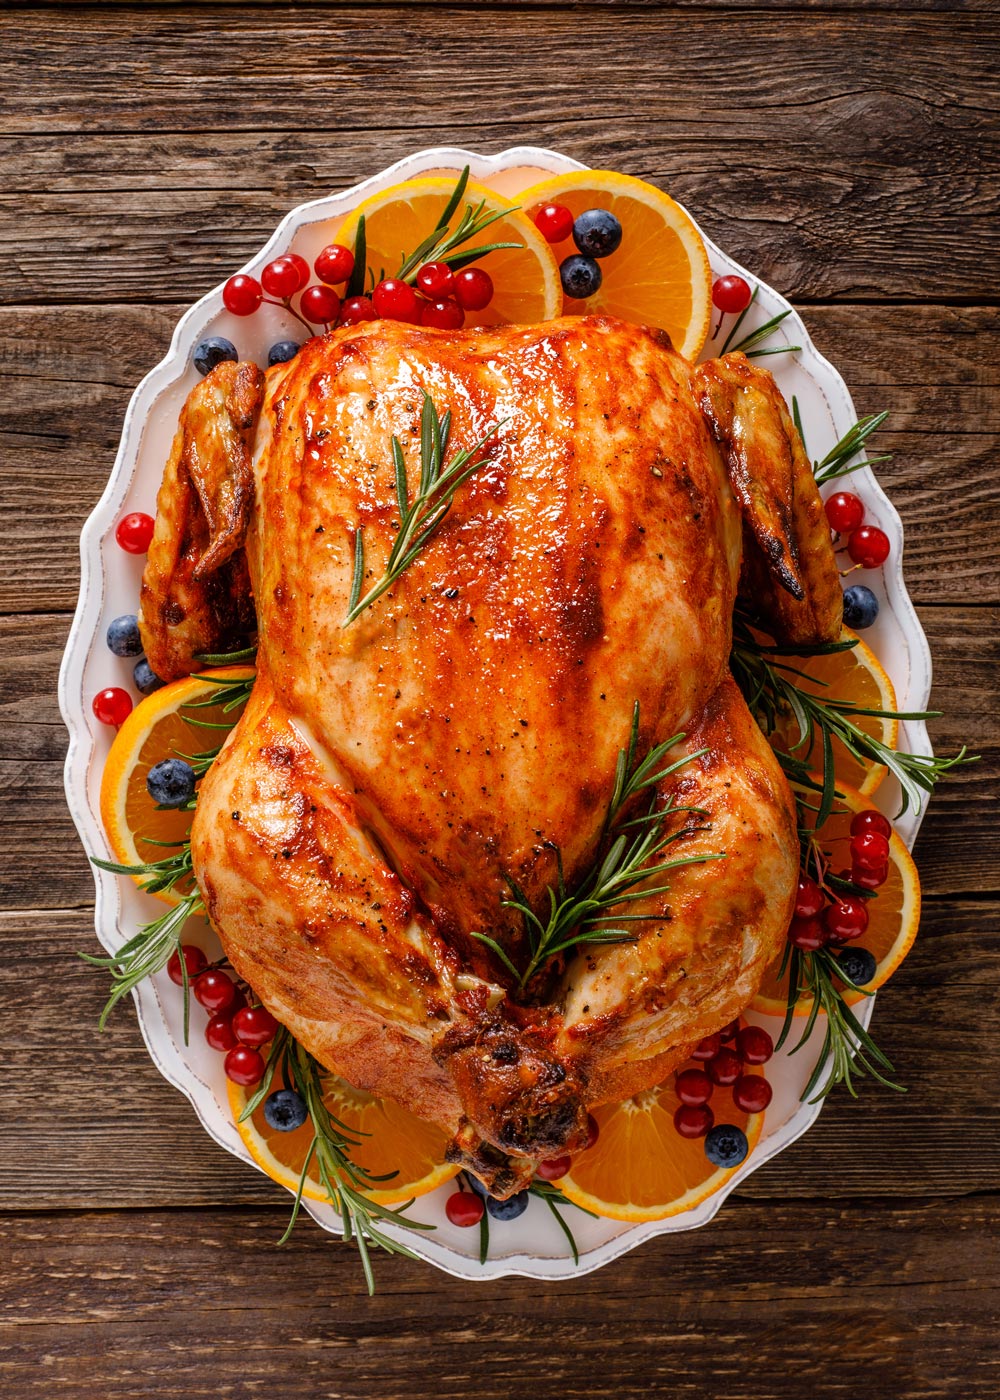 Brined Holiday Turkey